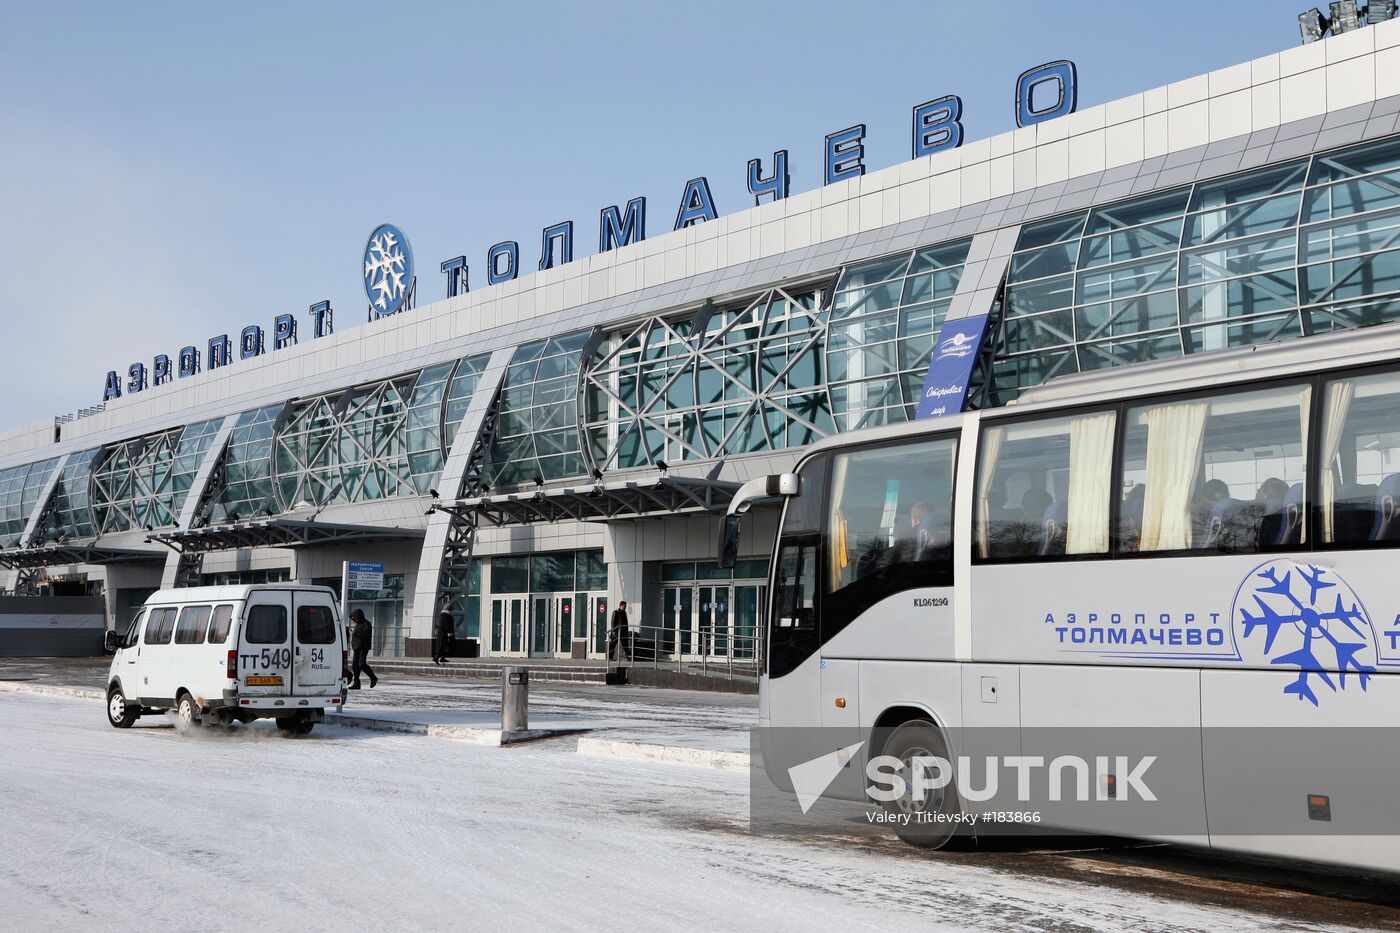 Tolmachevo Airport Novosibirsk